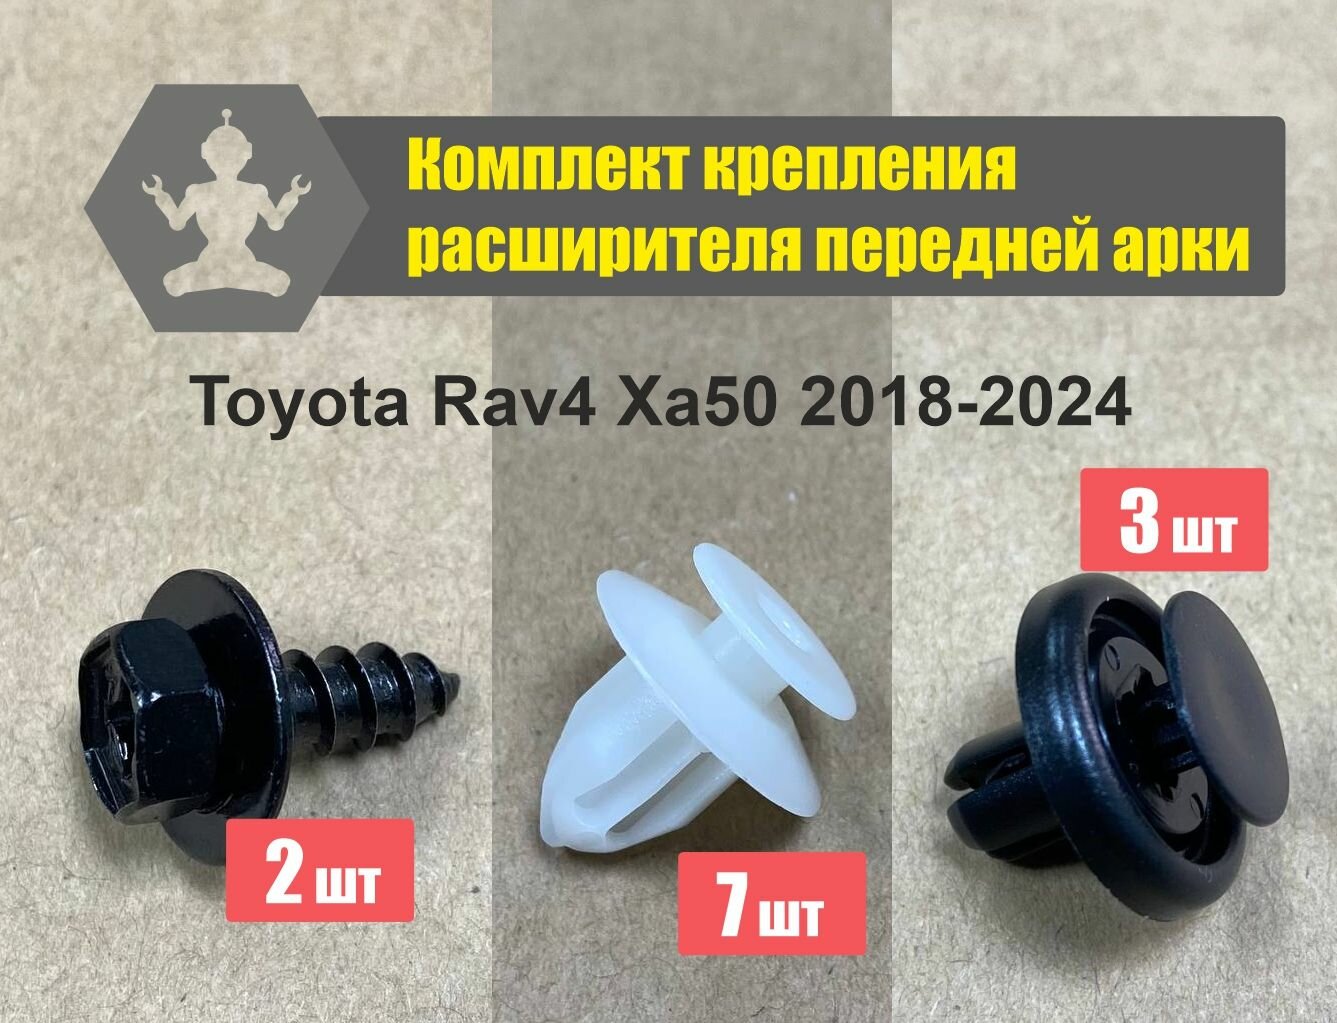 Комплект крепления расширителя передней арки Toyota Rav4 XA50 2018-2024, комплект на 1 сторону.